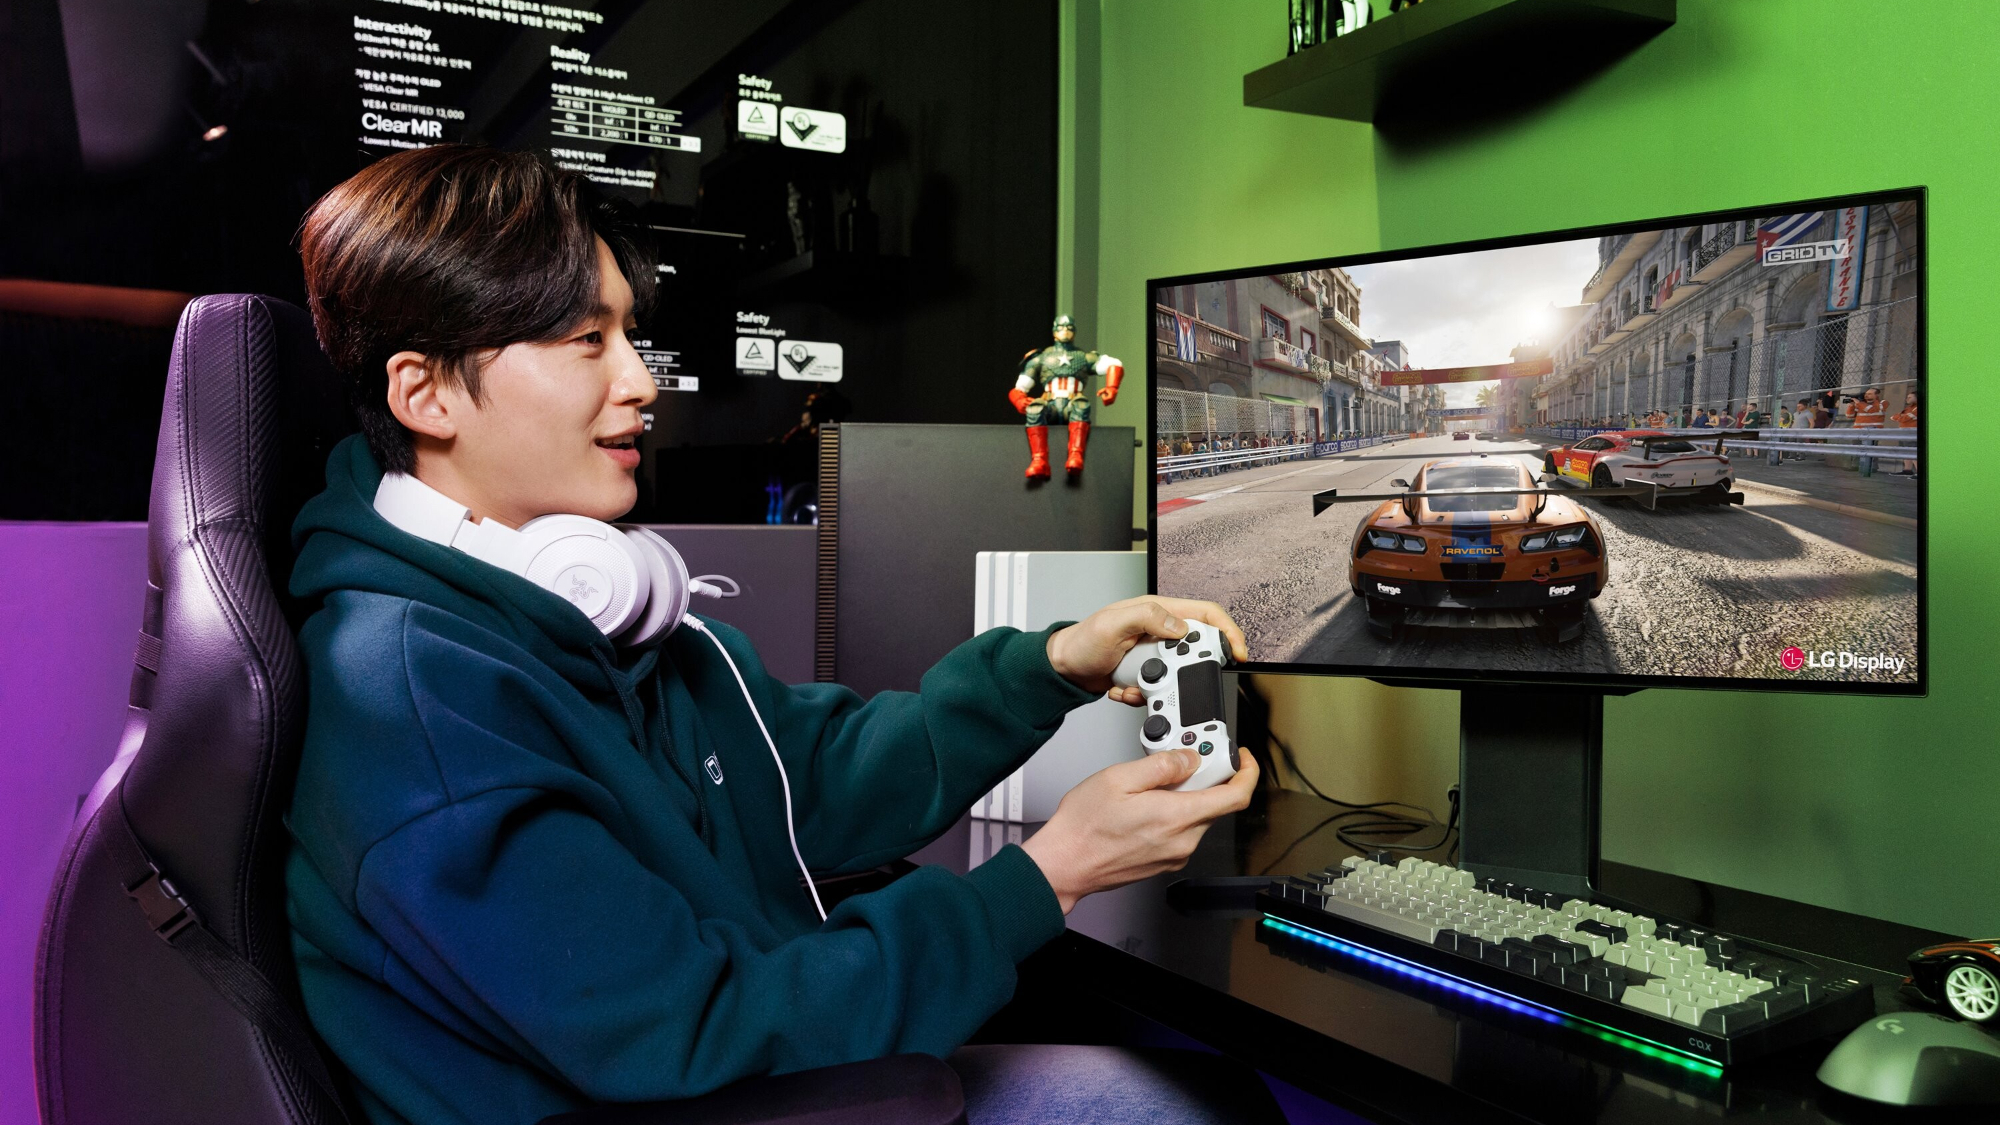 Man playing games on LG gaming monitor